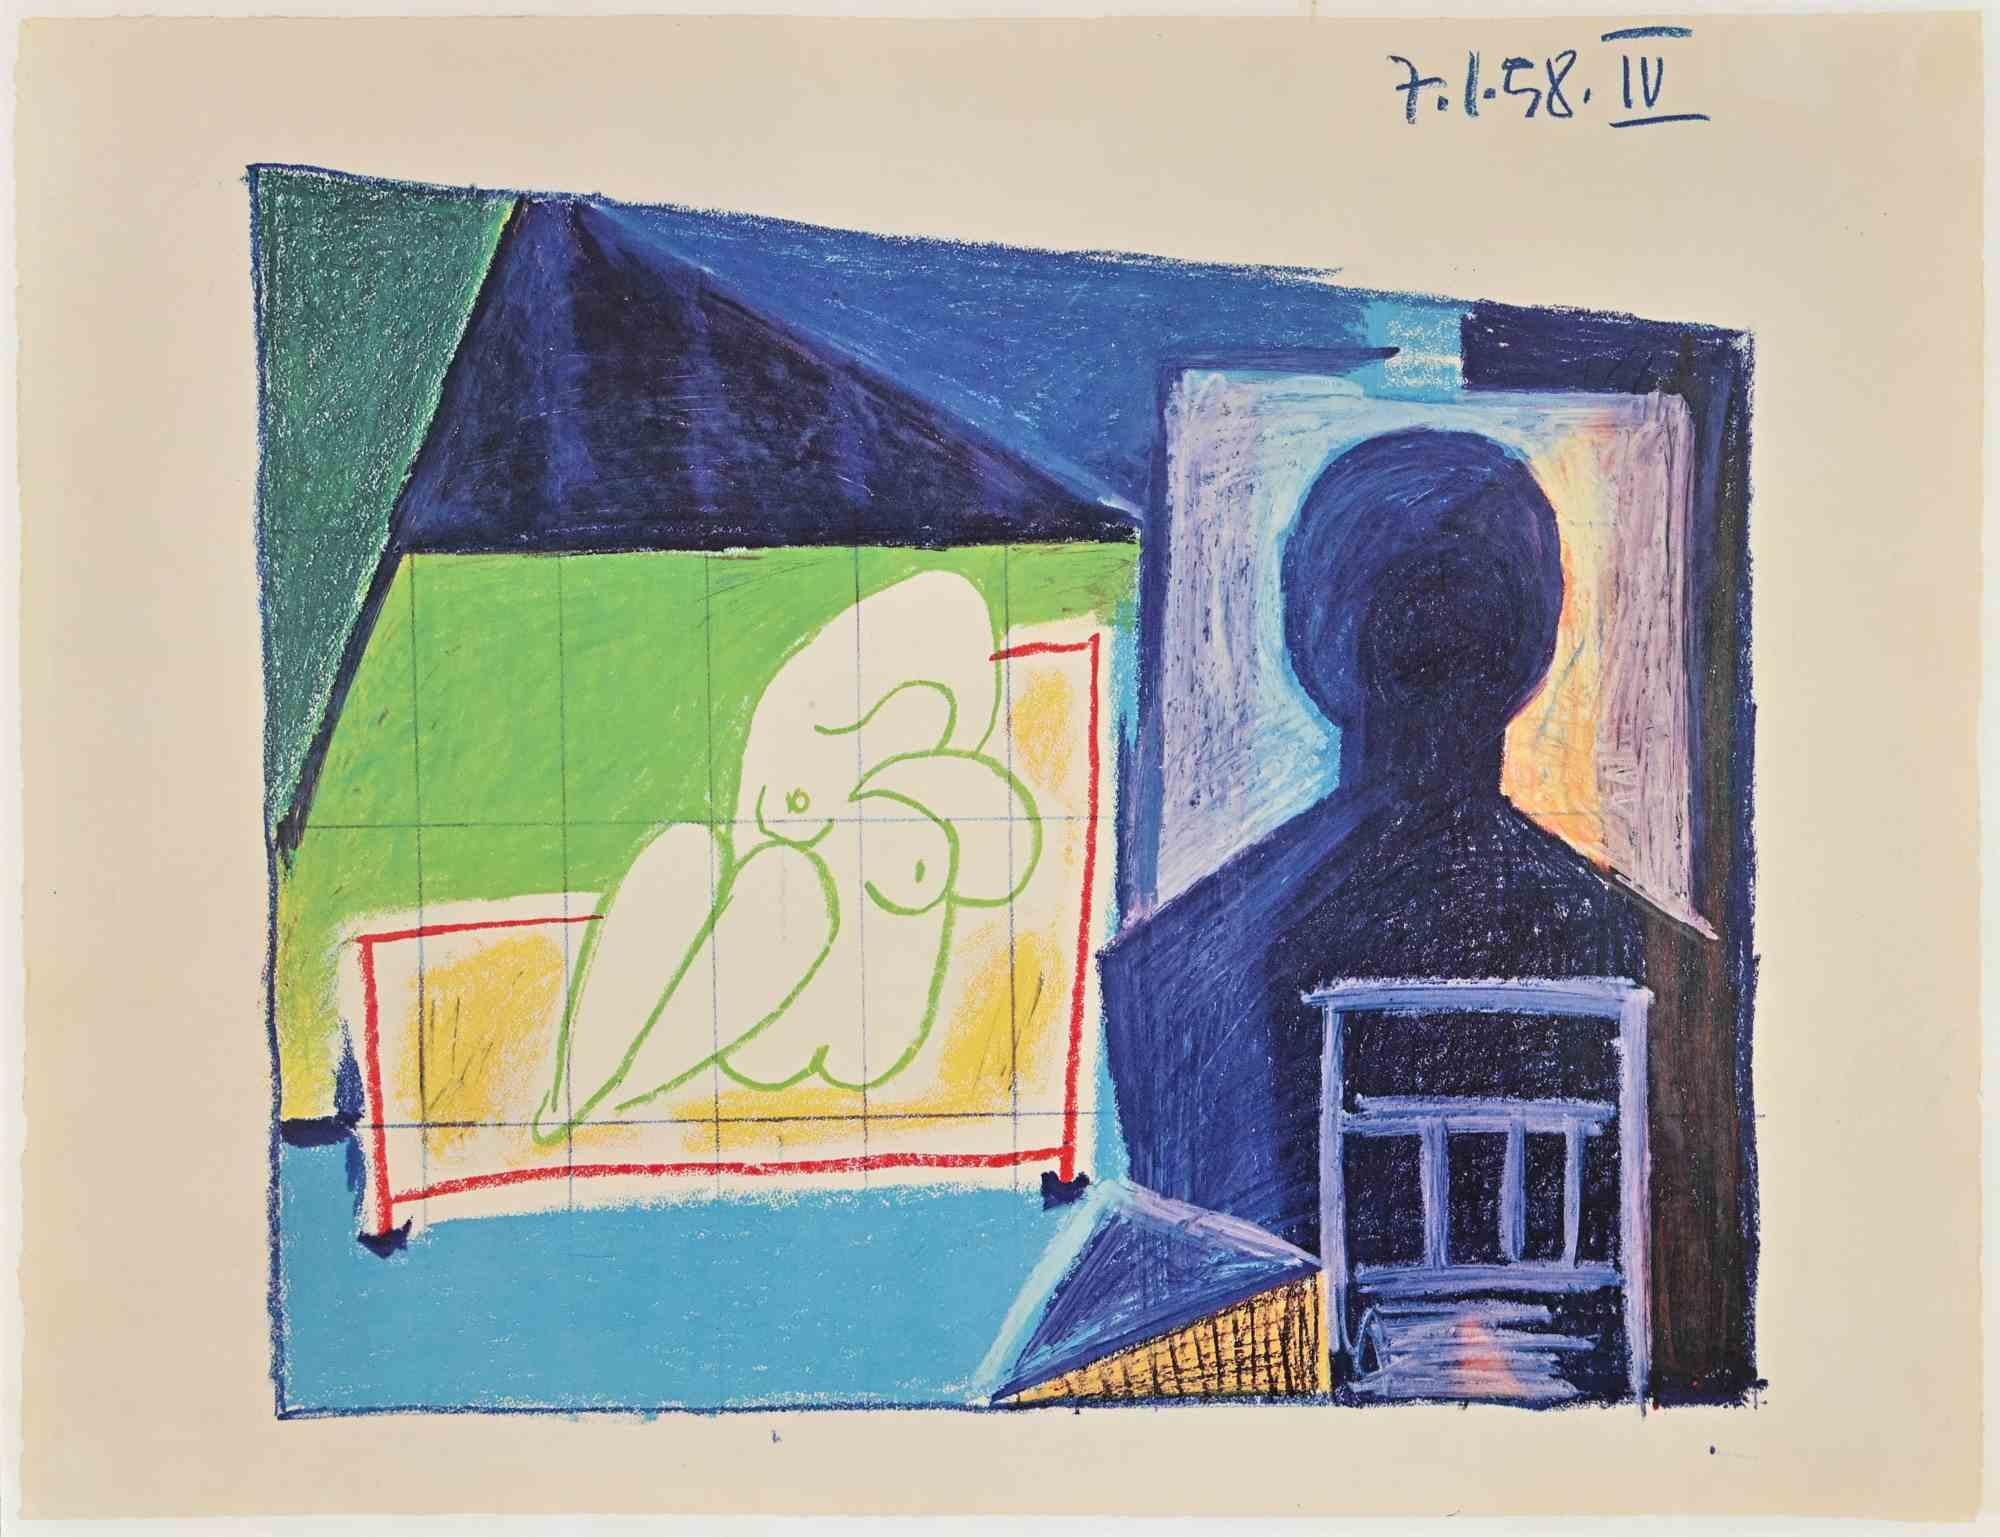 Die kubistische Komposition ist eine Vintage-Fotolithografie, die nach der Originalzeichnung von Pablo Picasso im Jahr 1959 realisiert wurde.

Signiert auf der Platte.

Sehr guter Zustand.

Pablo Picasso (Malaga, 1881 - Moujins, 1973) im Jahr 1973.